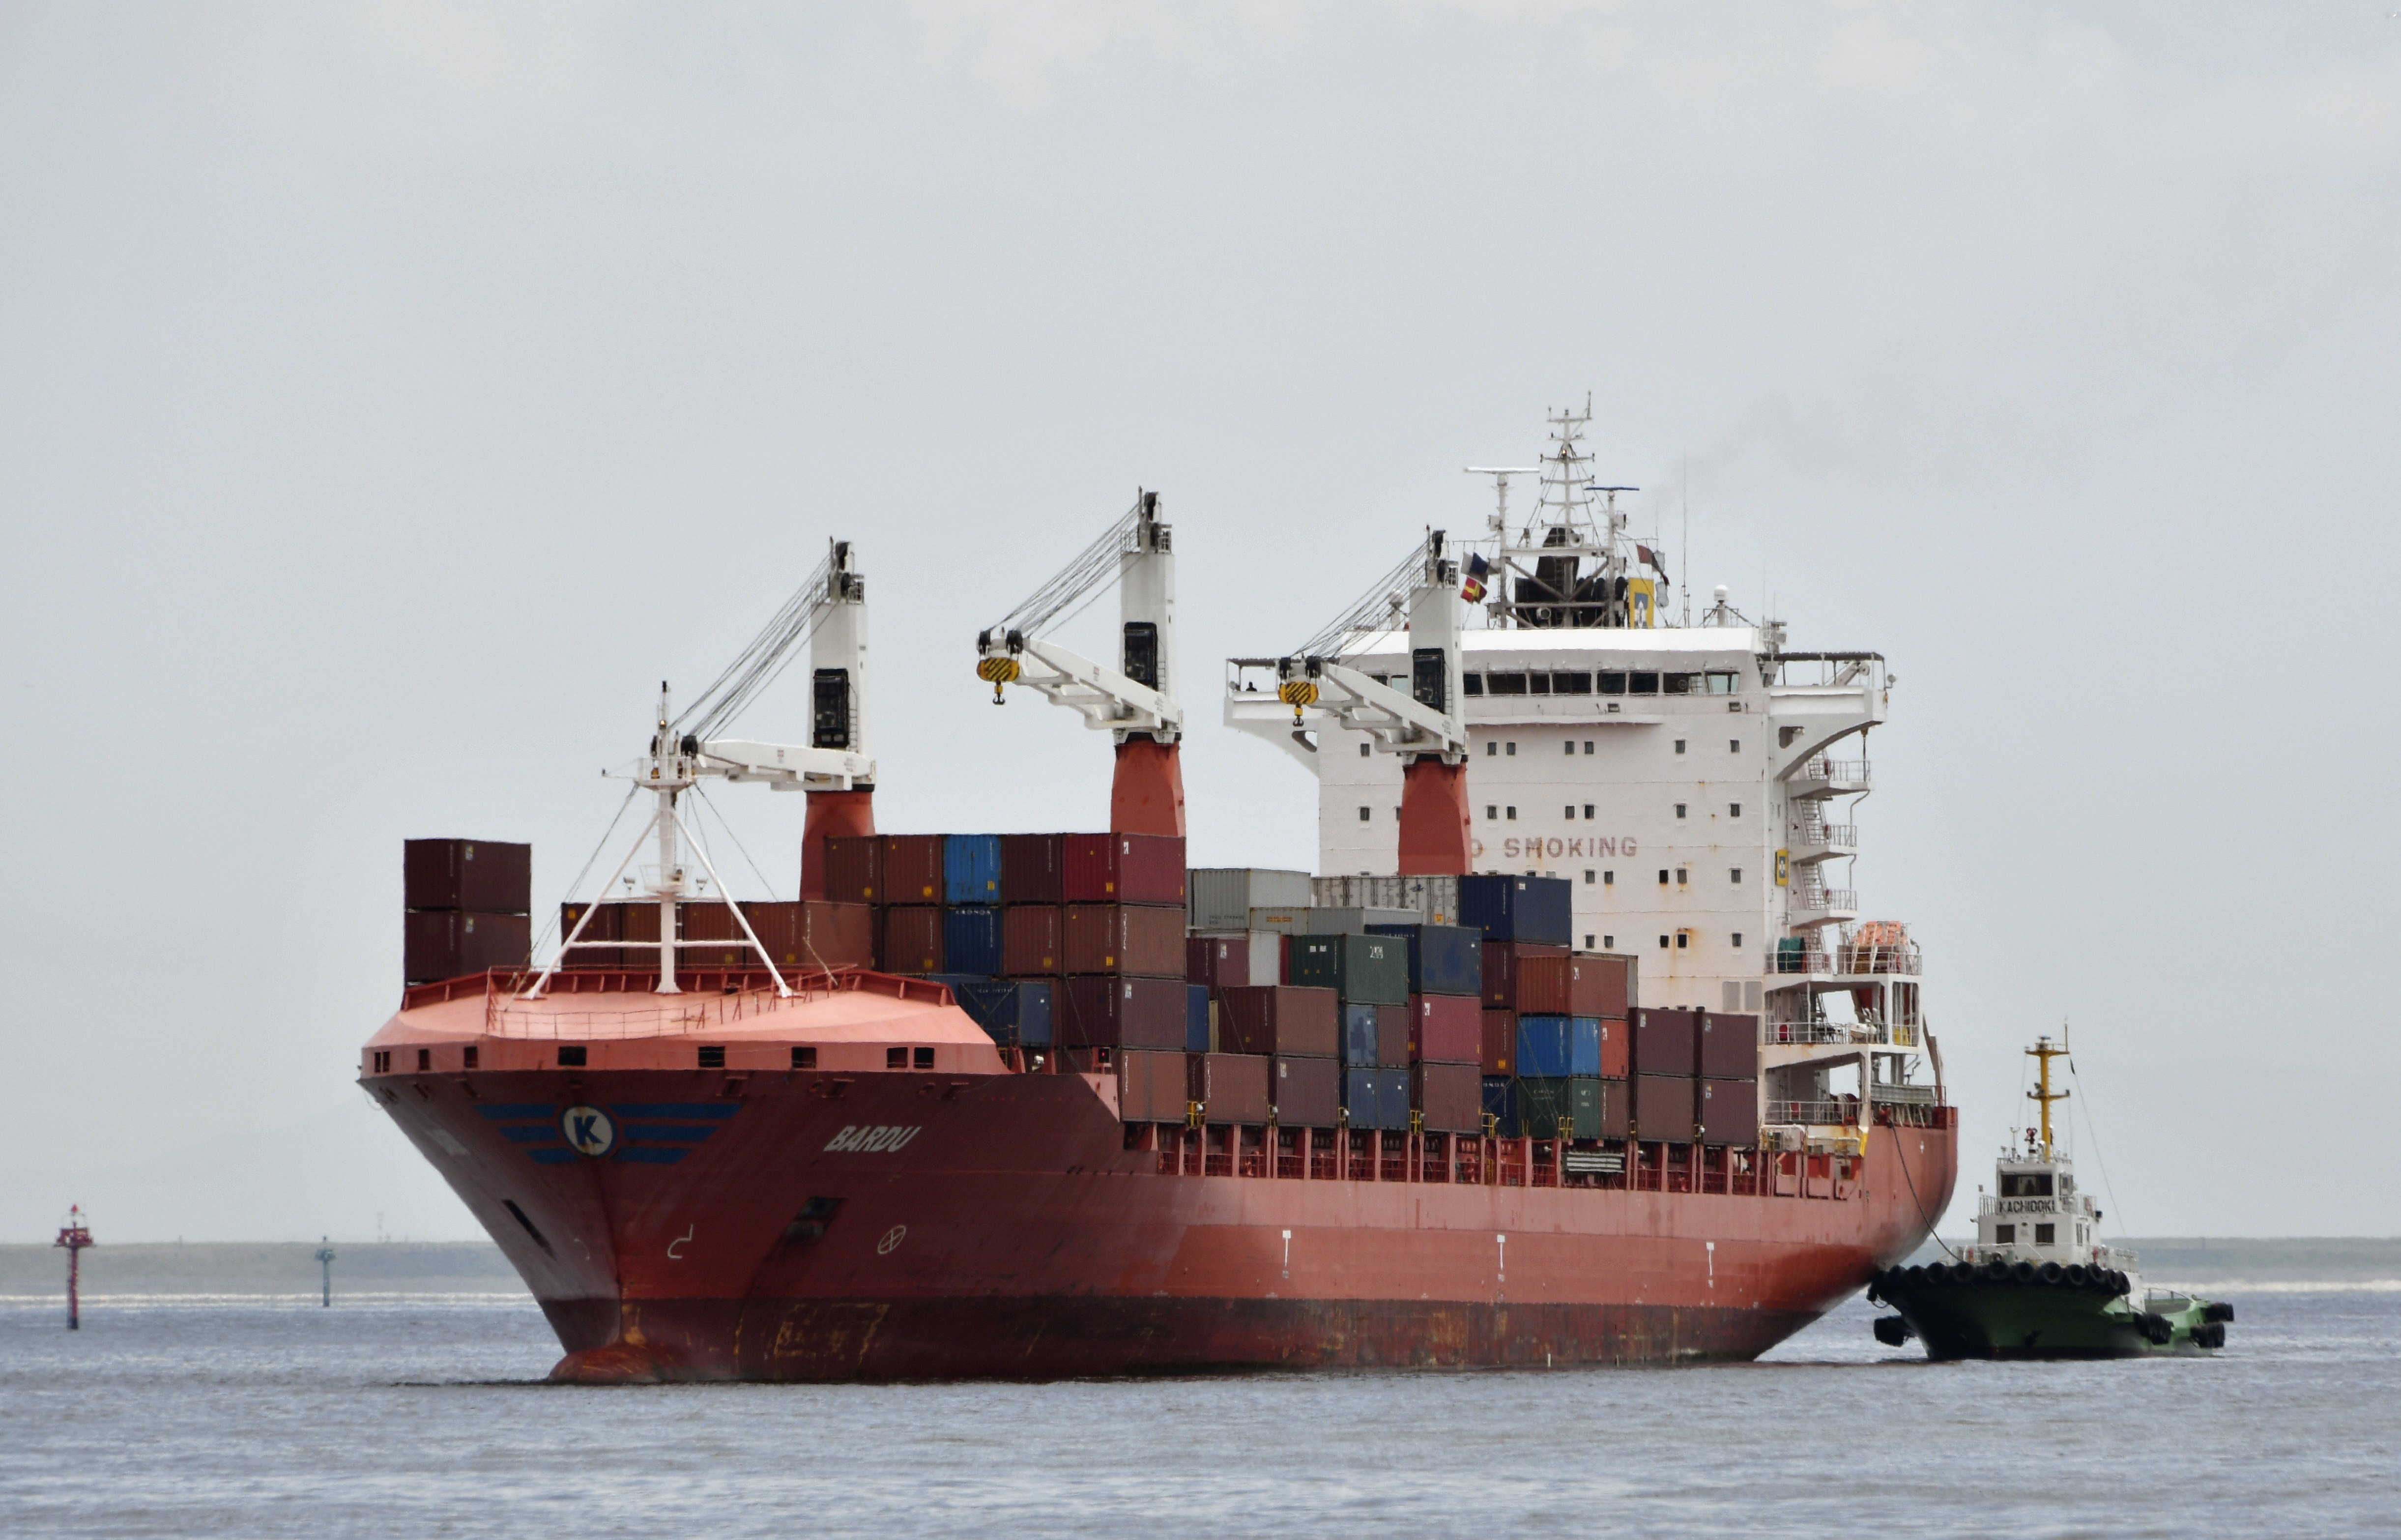 Αυτόνομα εμπορικά πλοία σχεδιάζει να ναυπηγήσει η Ιαπωνία